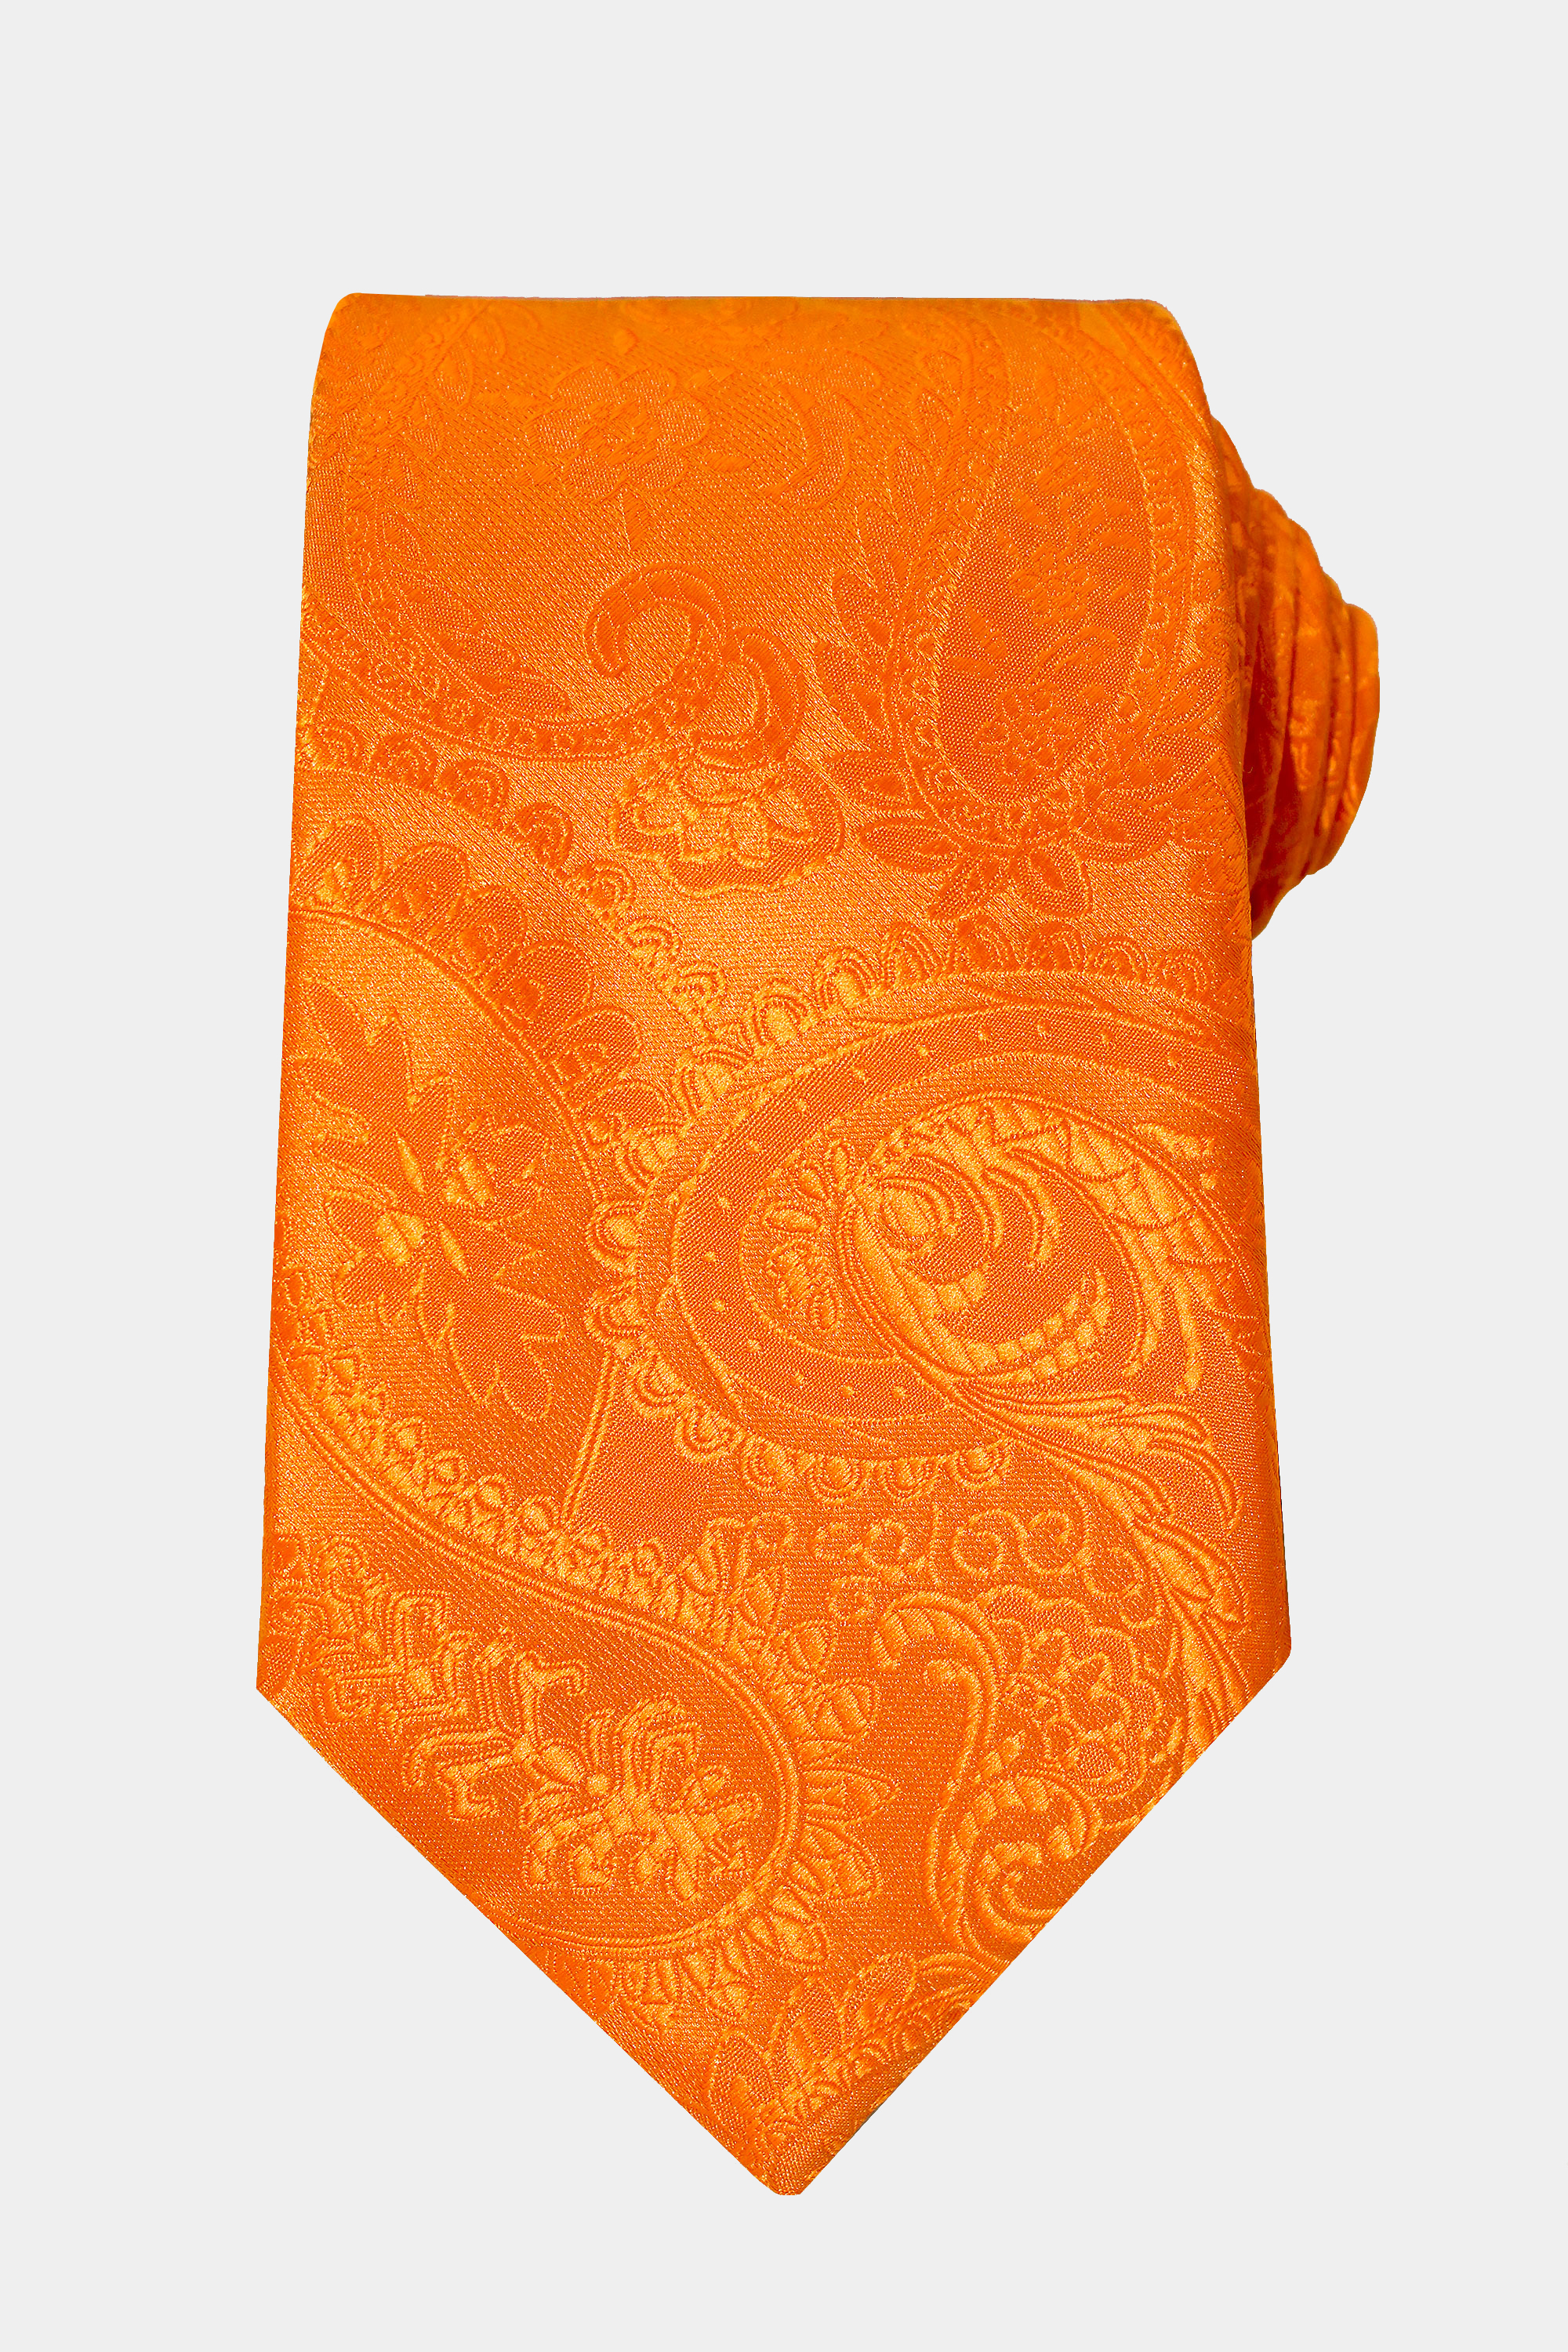 https://www.gentlemansguru.com/wp-content/uploads/2019/02/Orange-Paisley-Tie-from-Gentlemansguru.com_-1.jpg